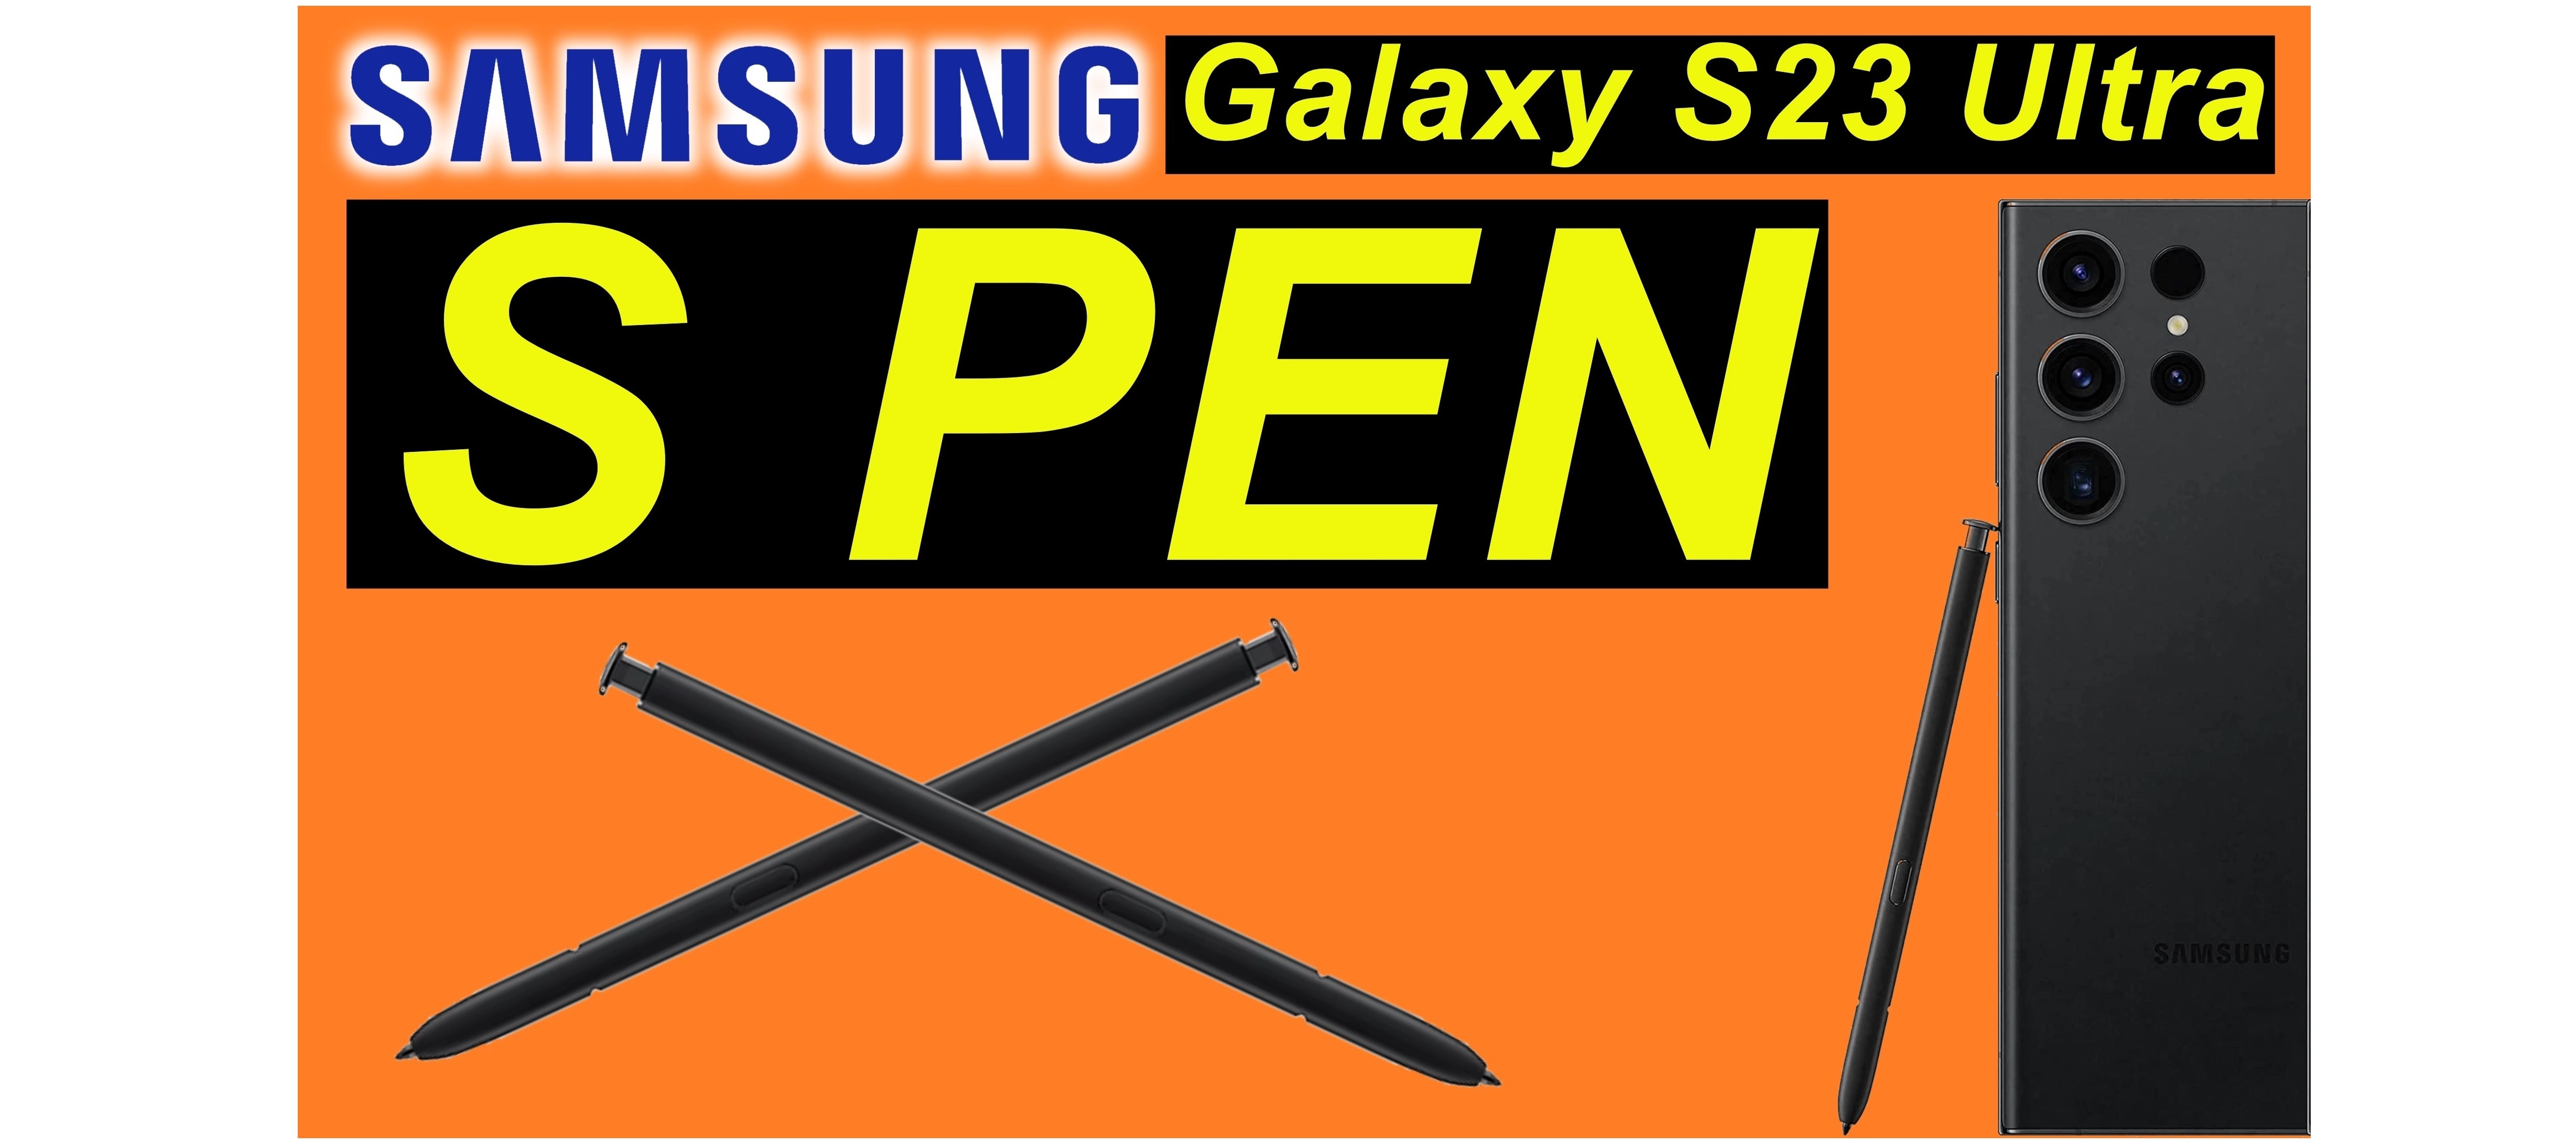 Der S Pen beim Samsung Galaxy S23 Ultra